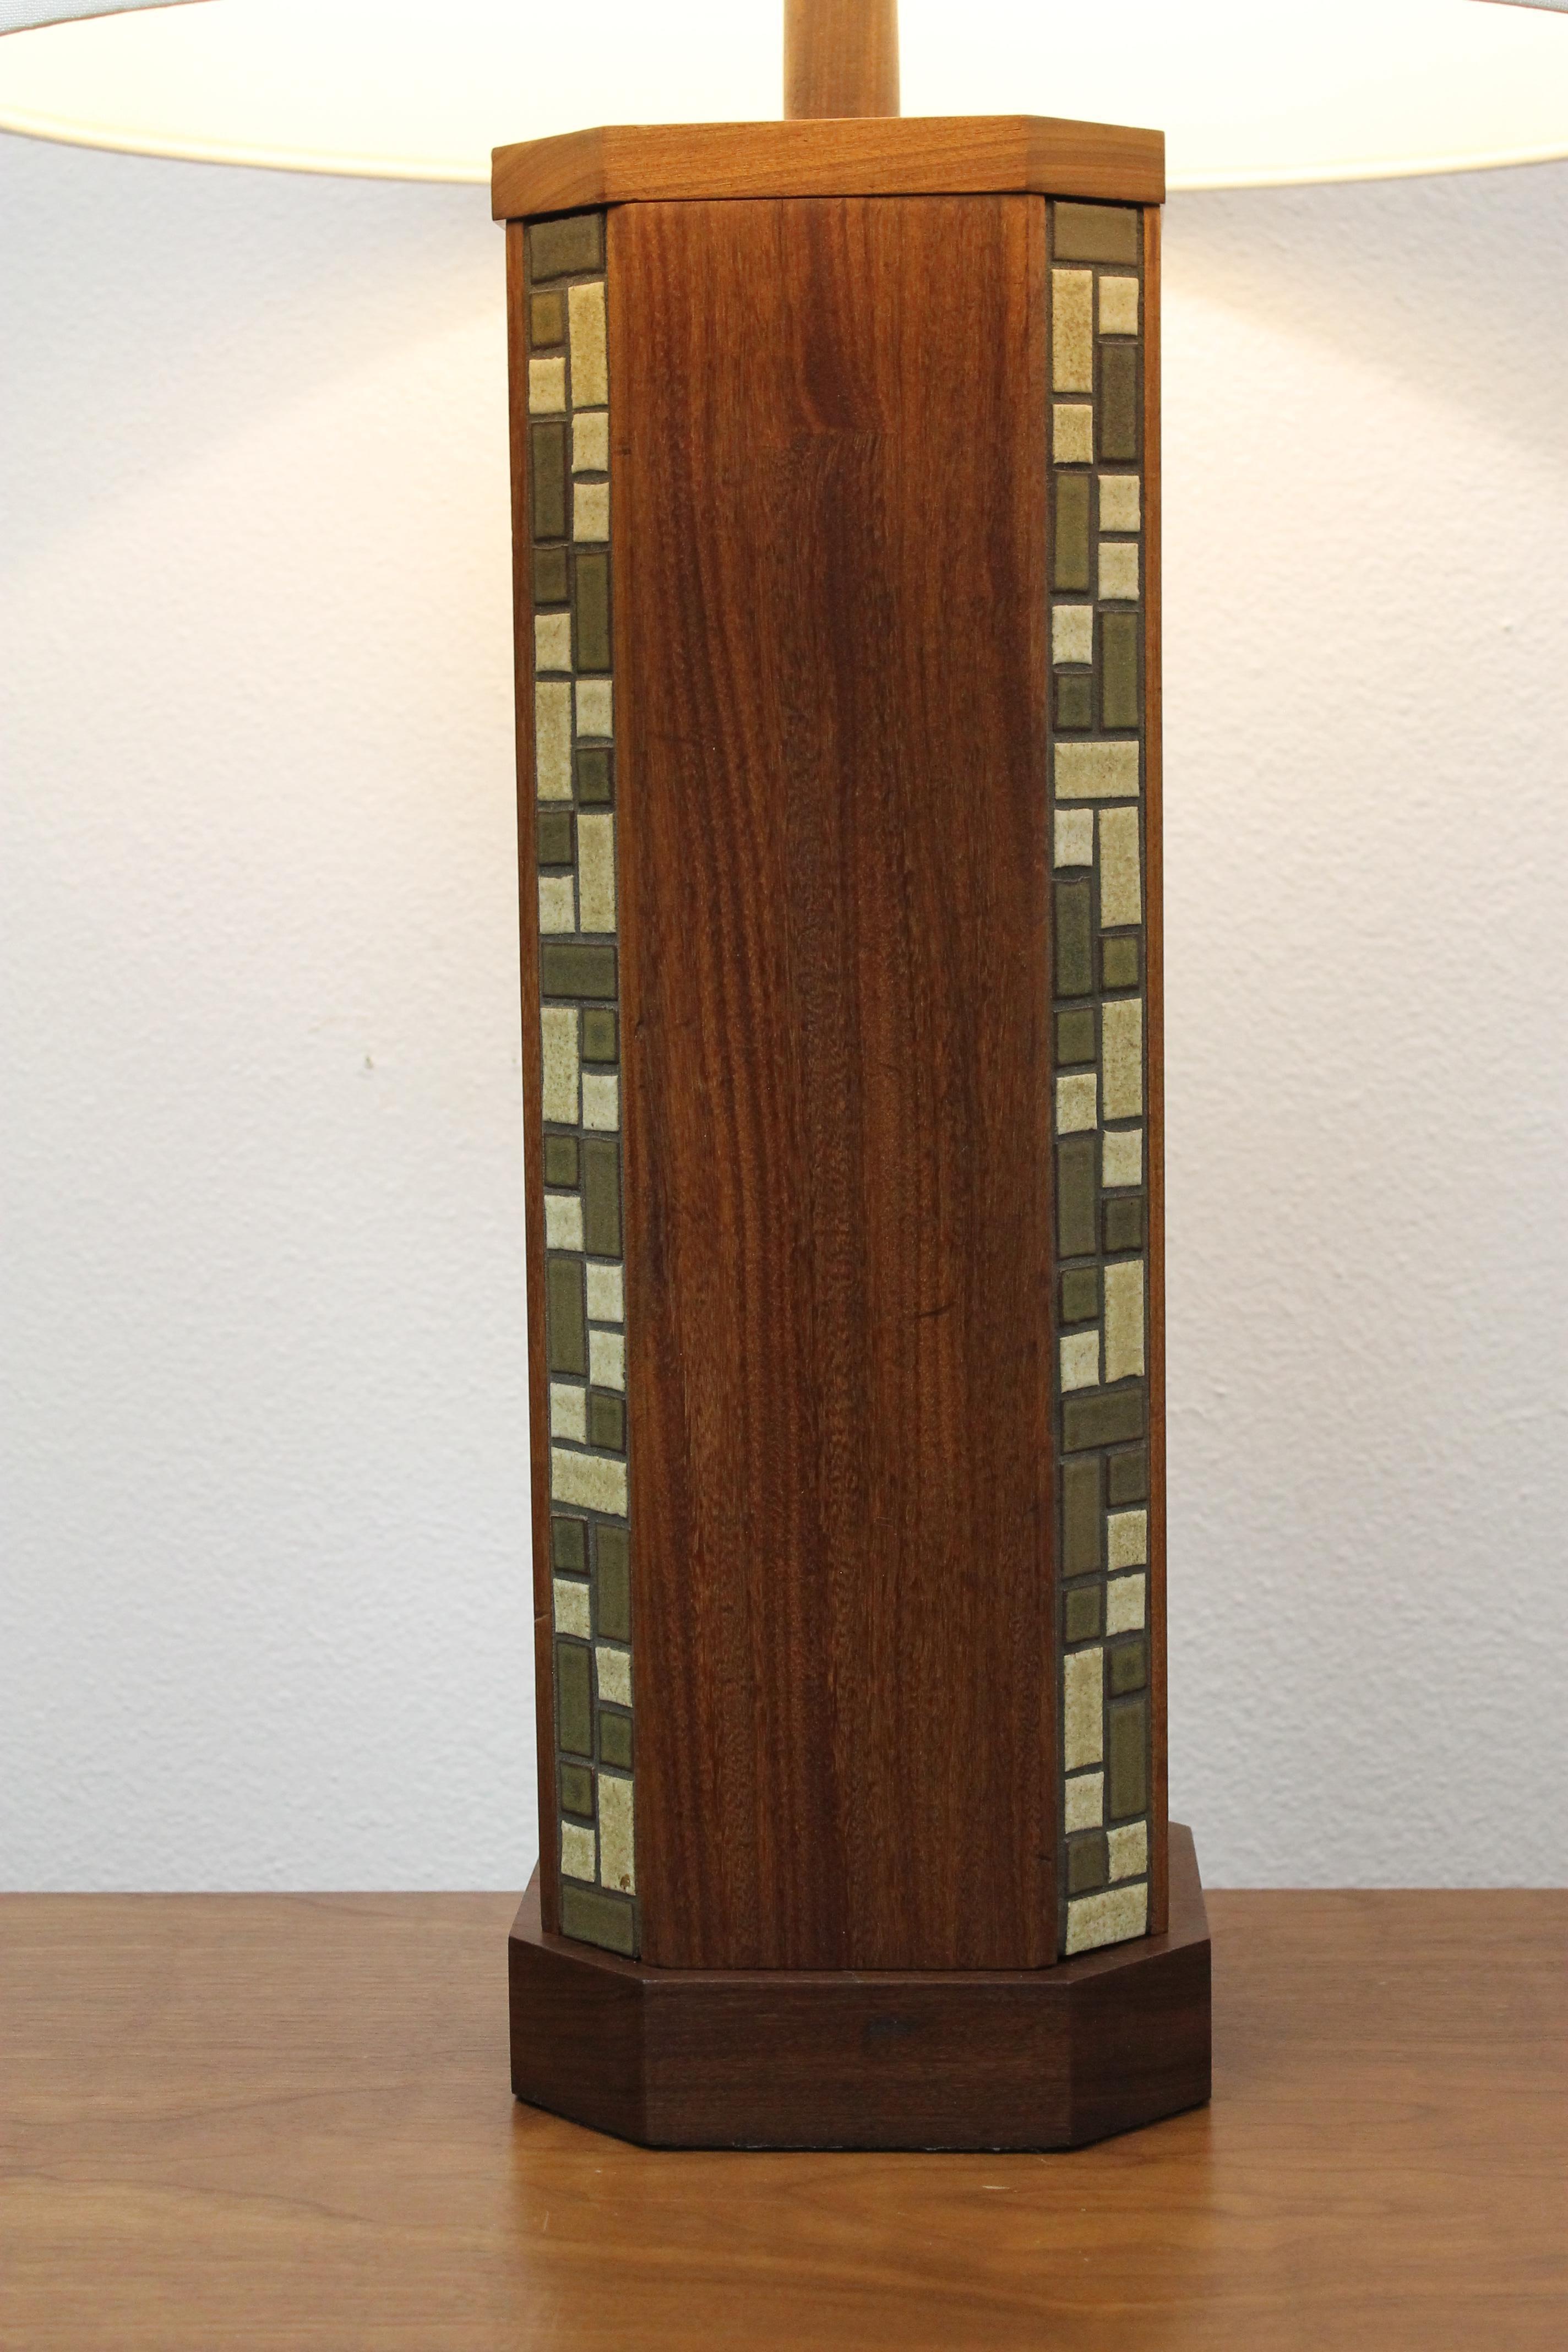 Lampe de table Martz par Marshall Studios, Inc. Veedersburg, Indiana. La lampe comporte 4 bandes de carreaux de céramique. La lampe mesure 7 pouces de large, 7 pouces de profondeur et 23,5 pouces de haut de la base au bas de la douille. La lampe a